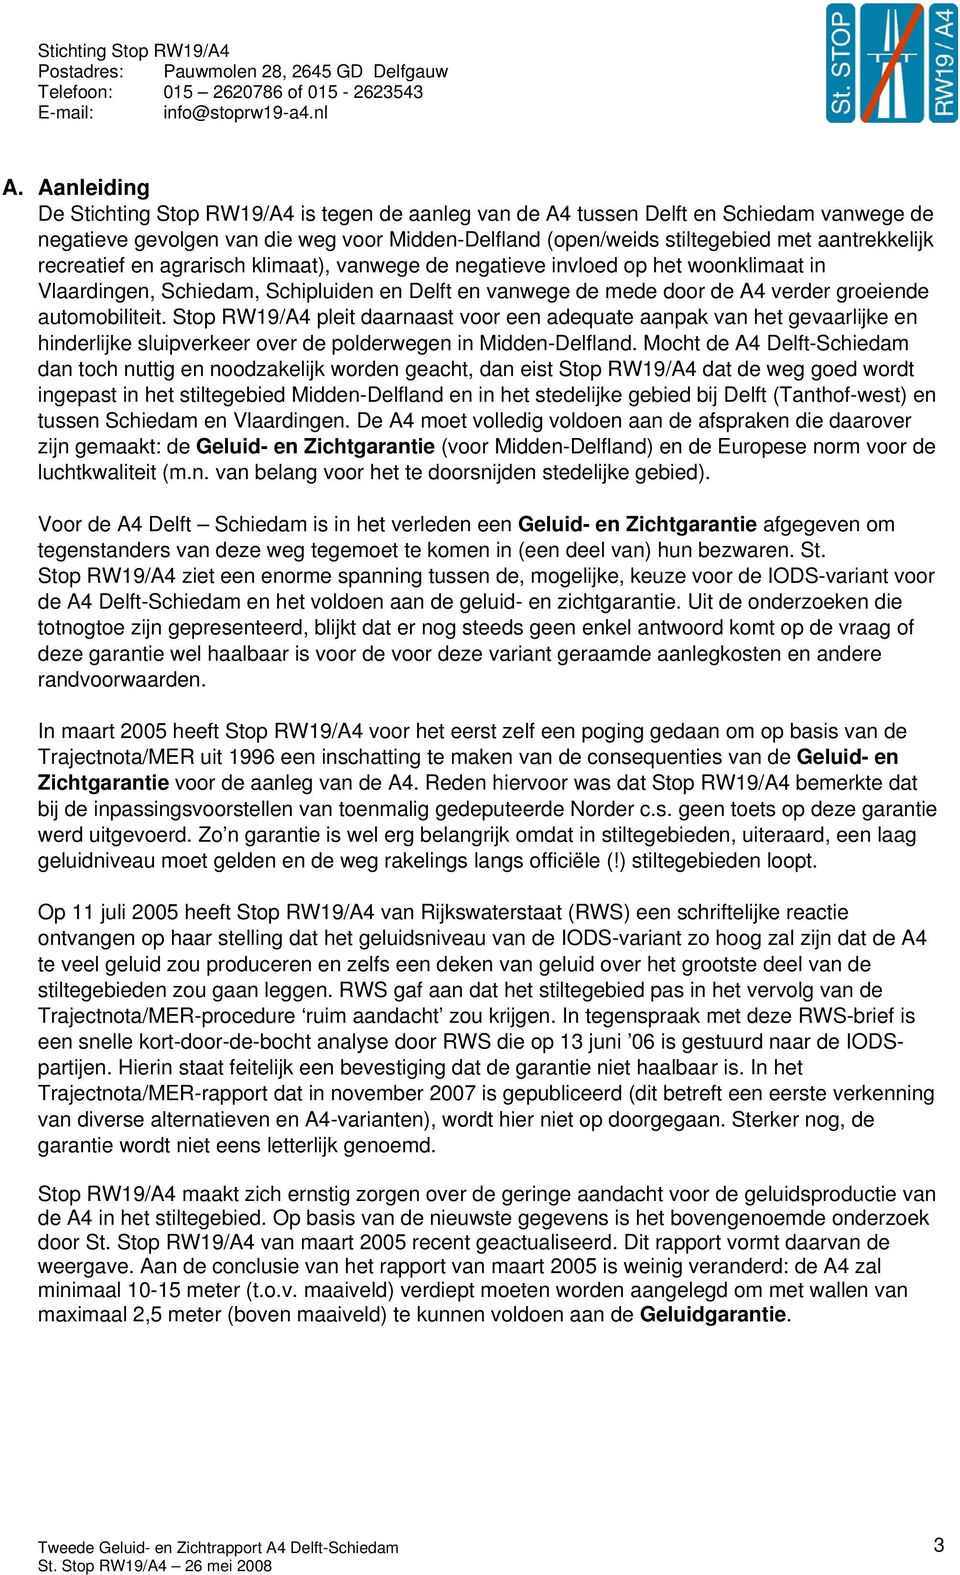 Stop RW19/A4 pleit daarnaast voor een adequate aanpak van het gevaarlijke en hinderlijke sluipverkeer over de polderwegen in Midden-Delfland.